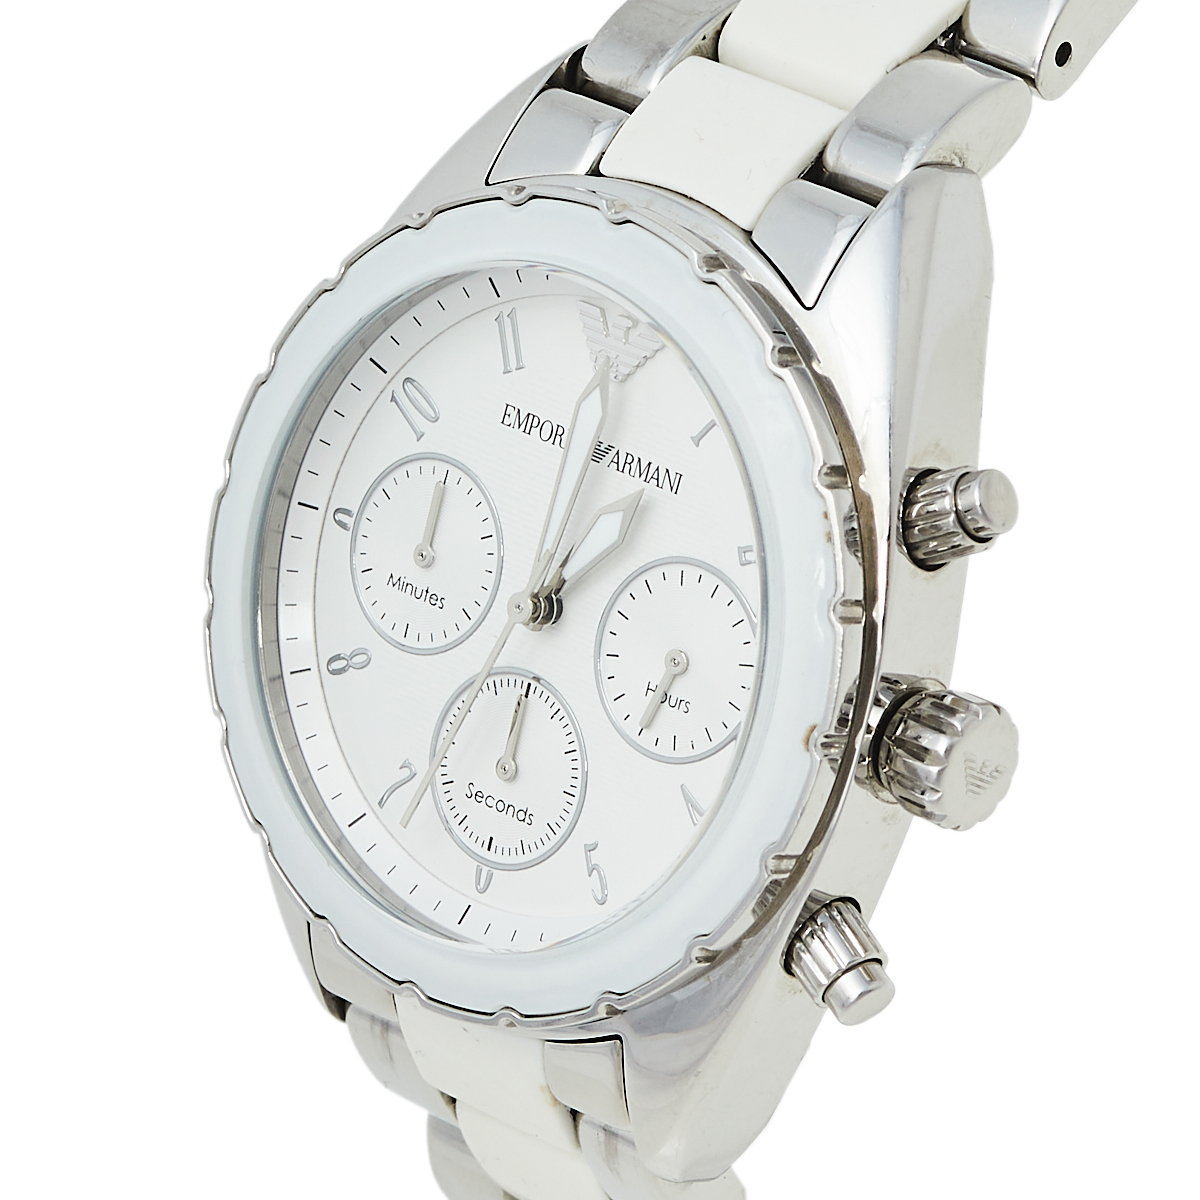 

Emporio Armani White Stainless Steel Sportivo Chrono AR5940 Women's Wristwatch